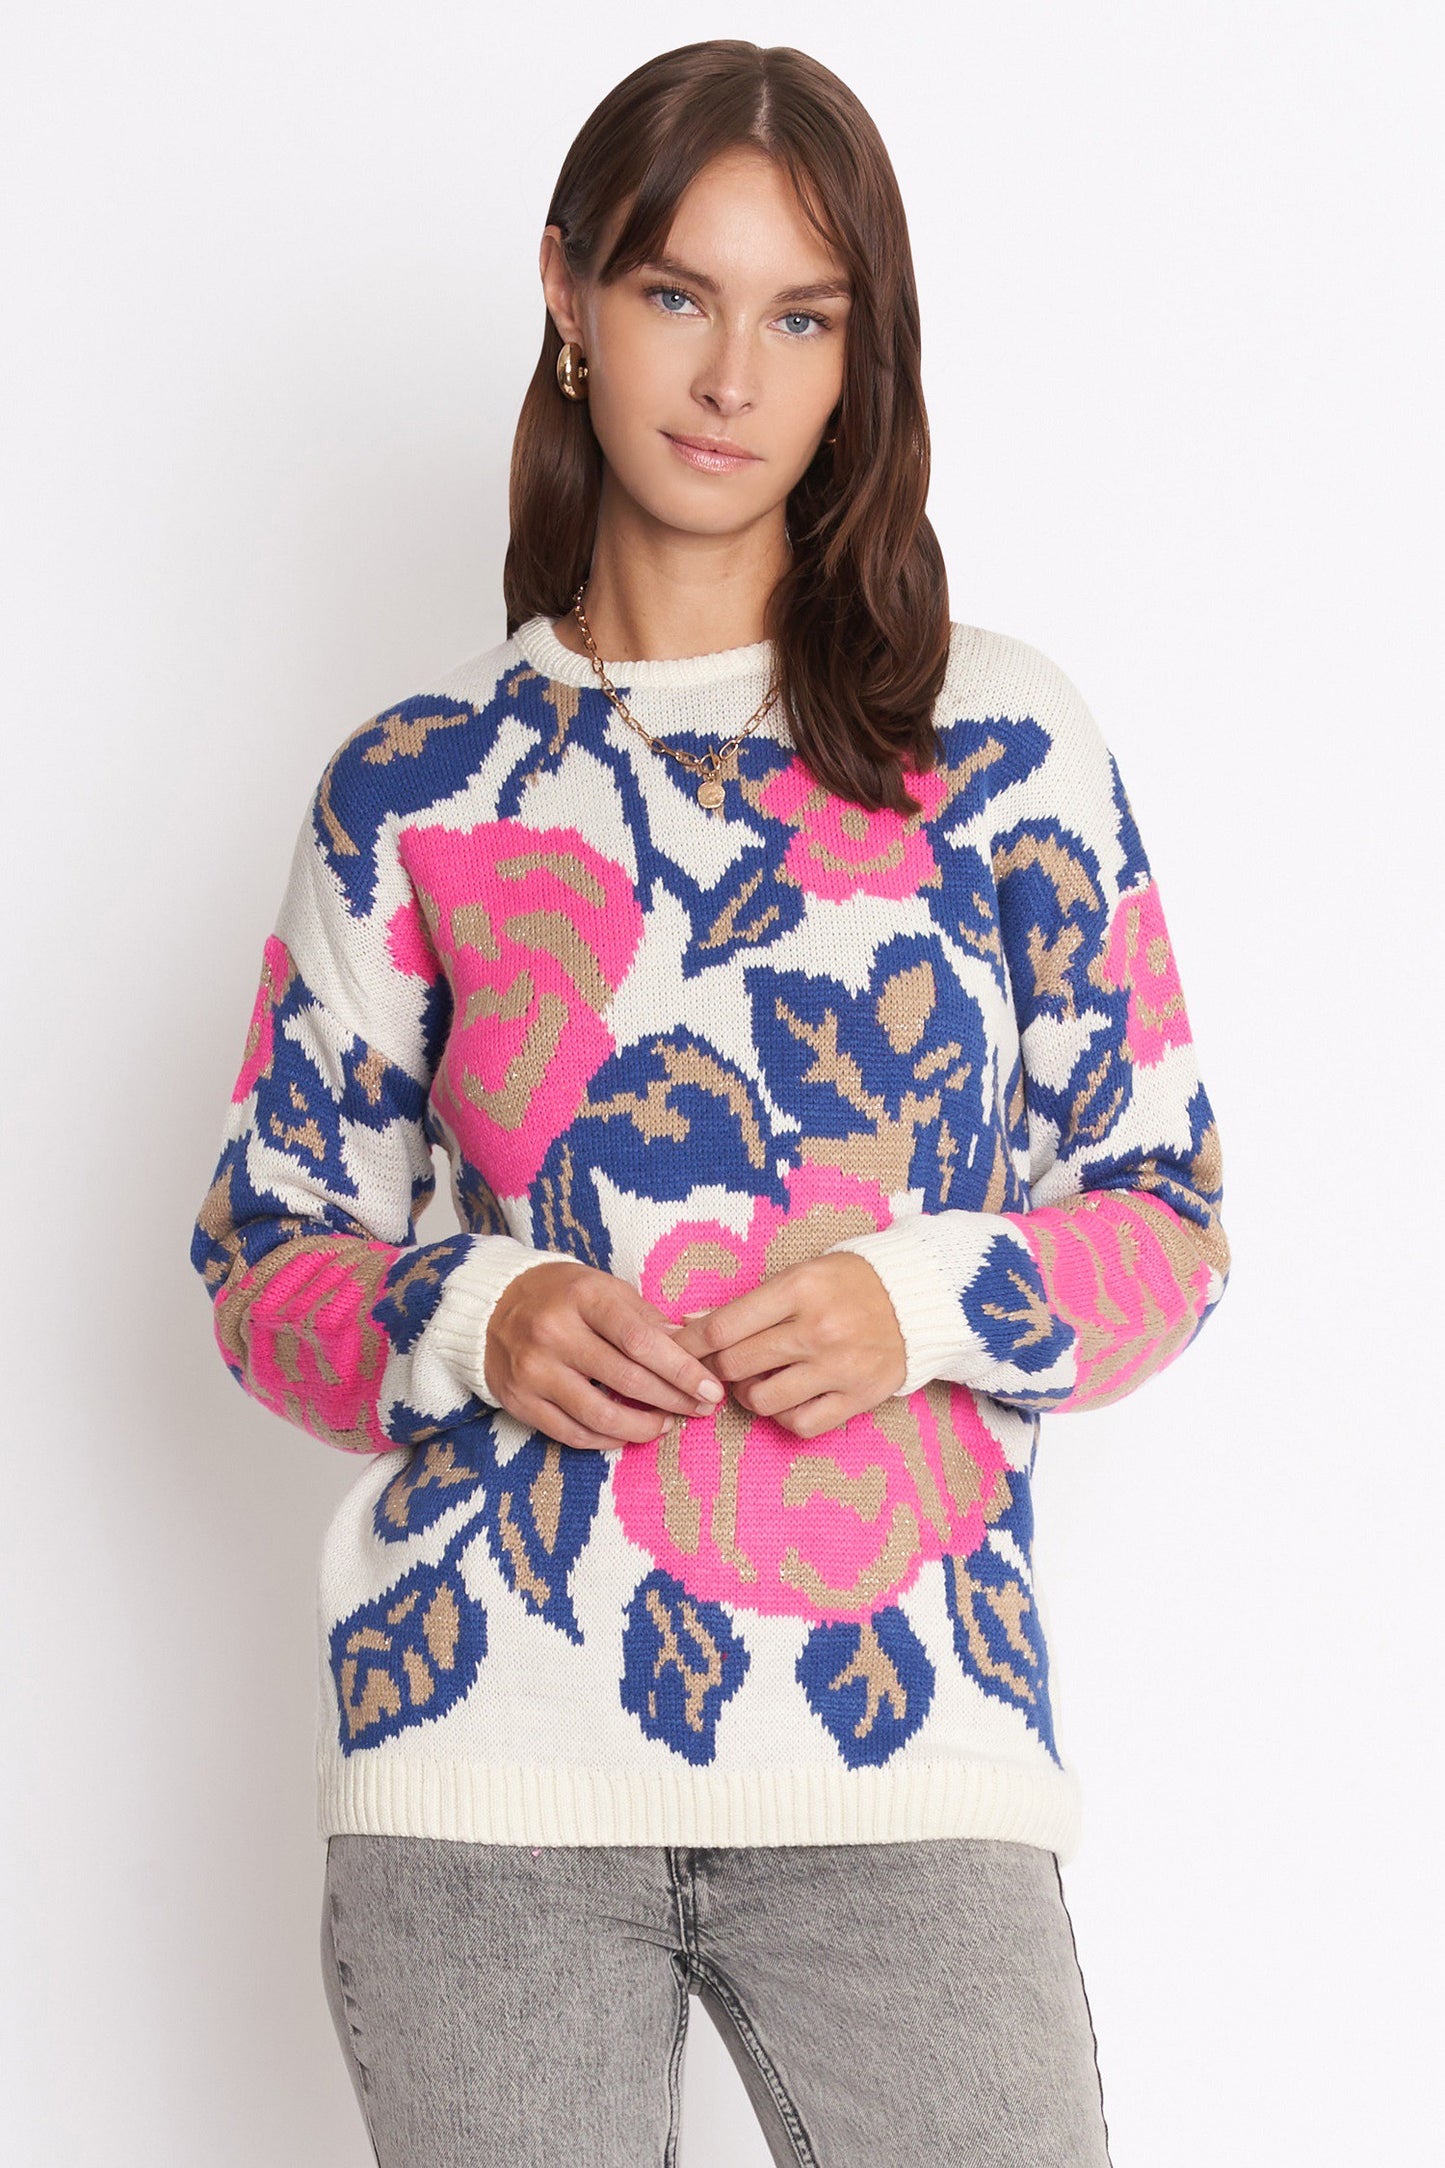 Calla Floral sweater